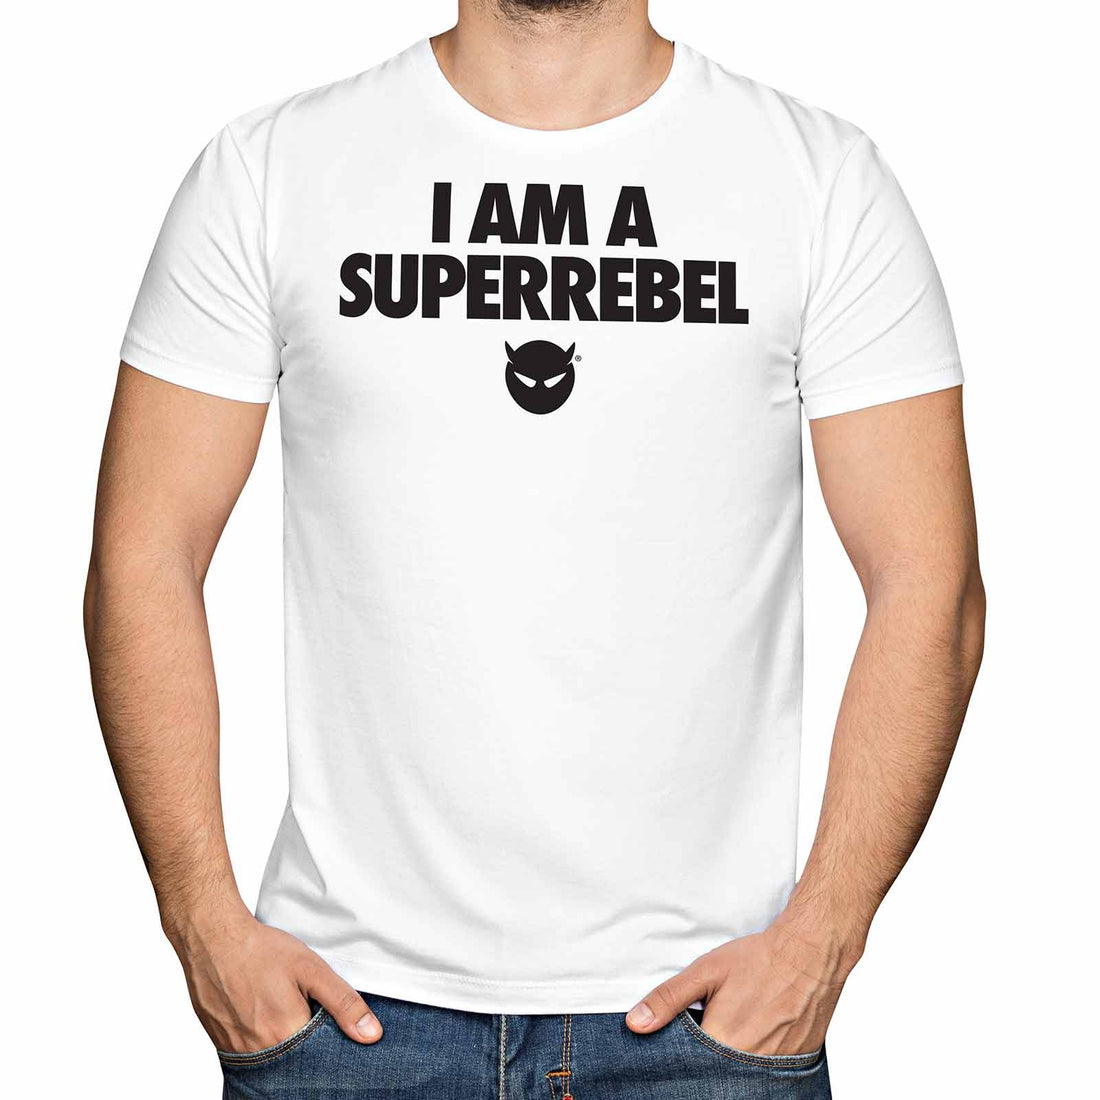 I AM A SUPERREBEL SHIRT